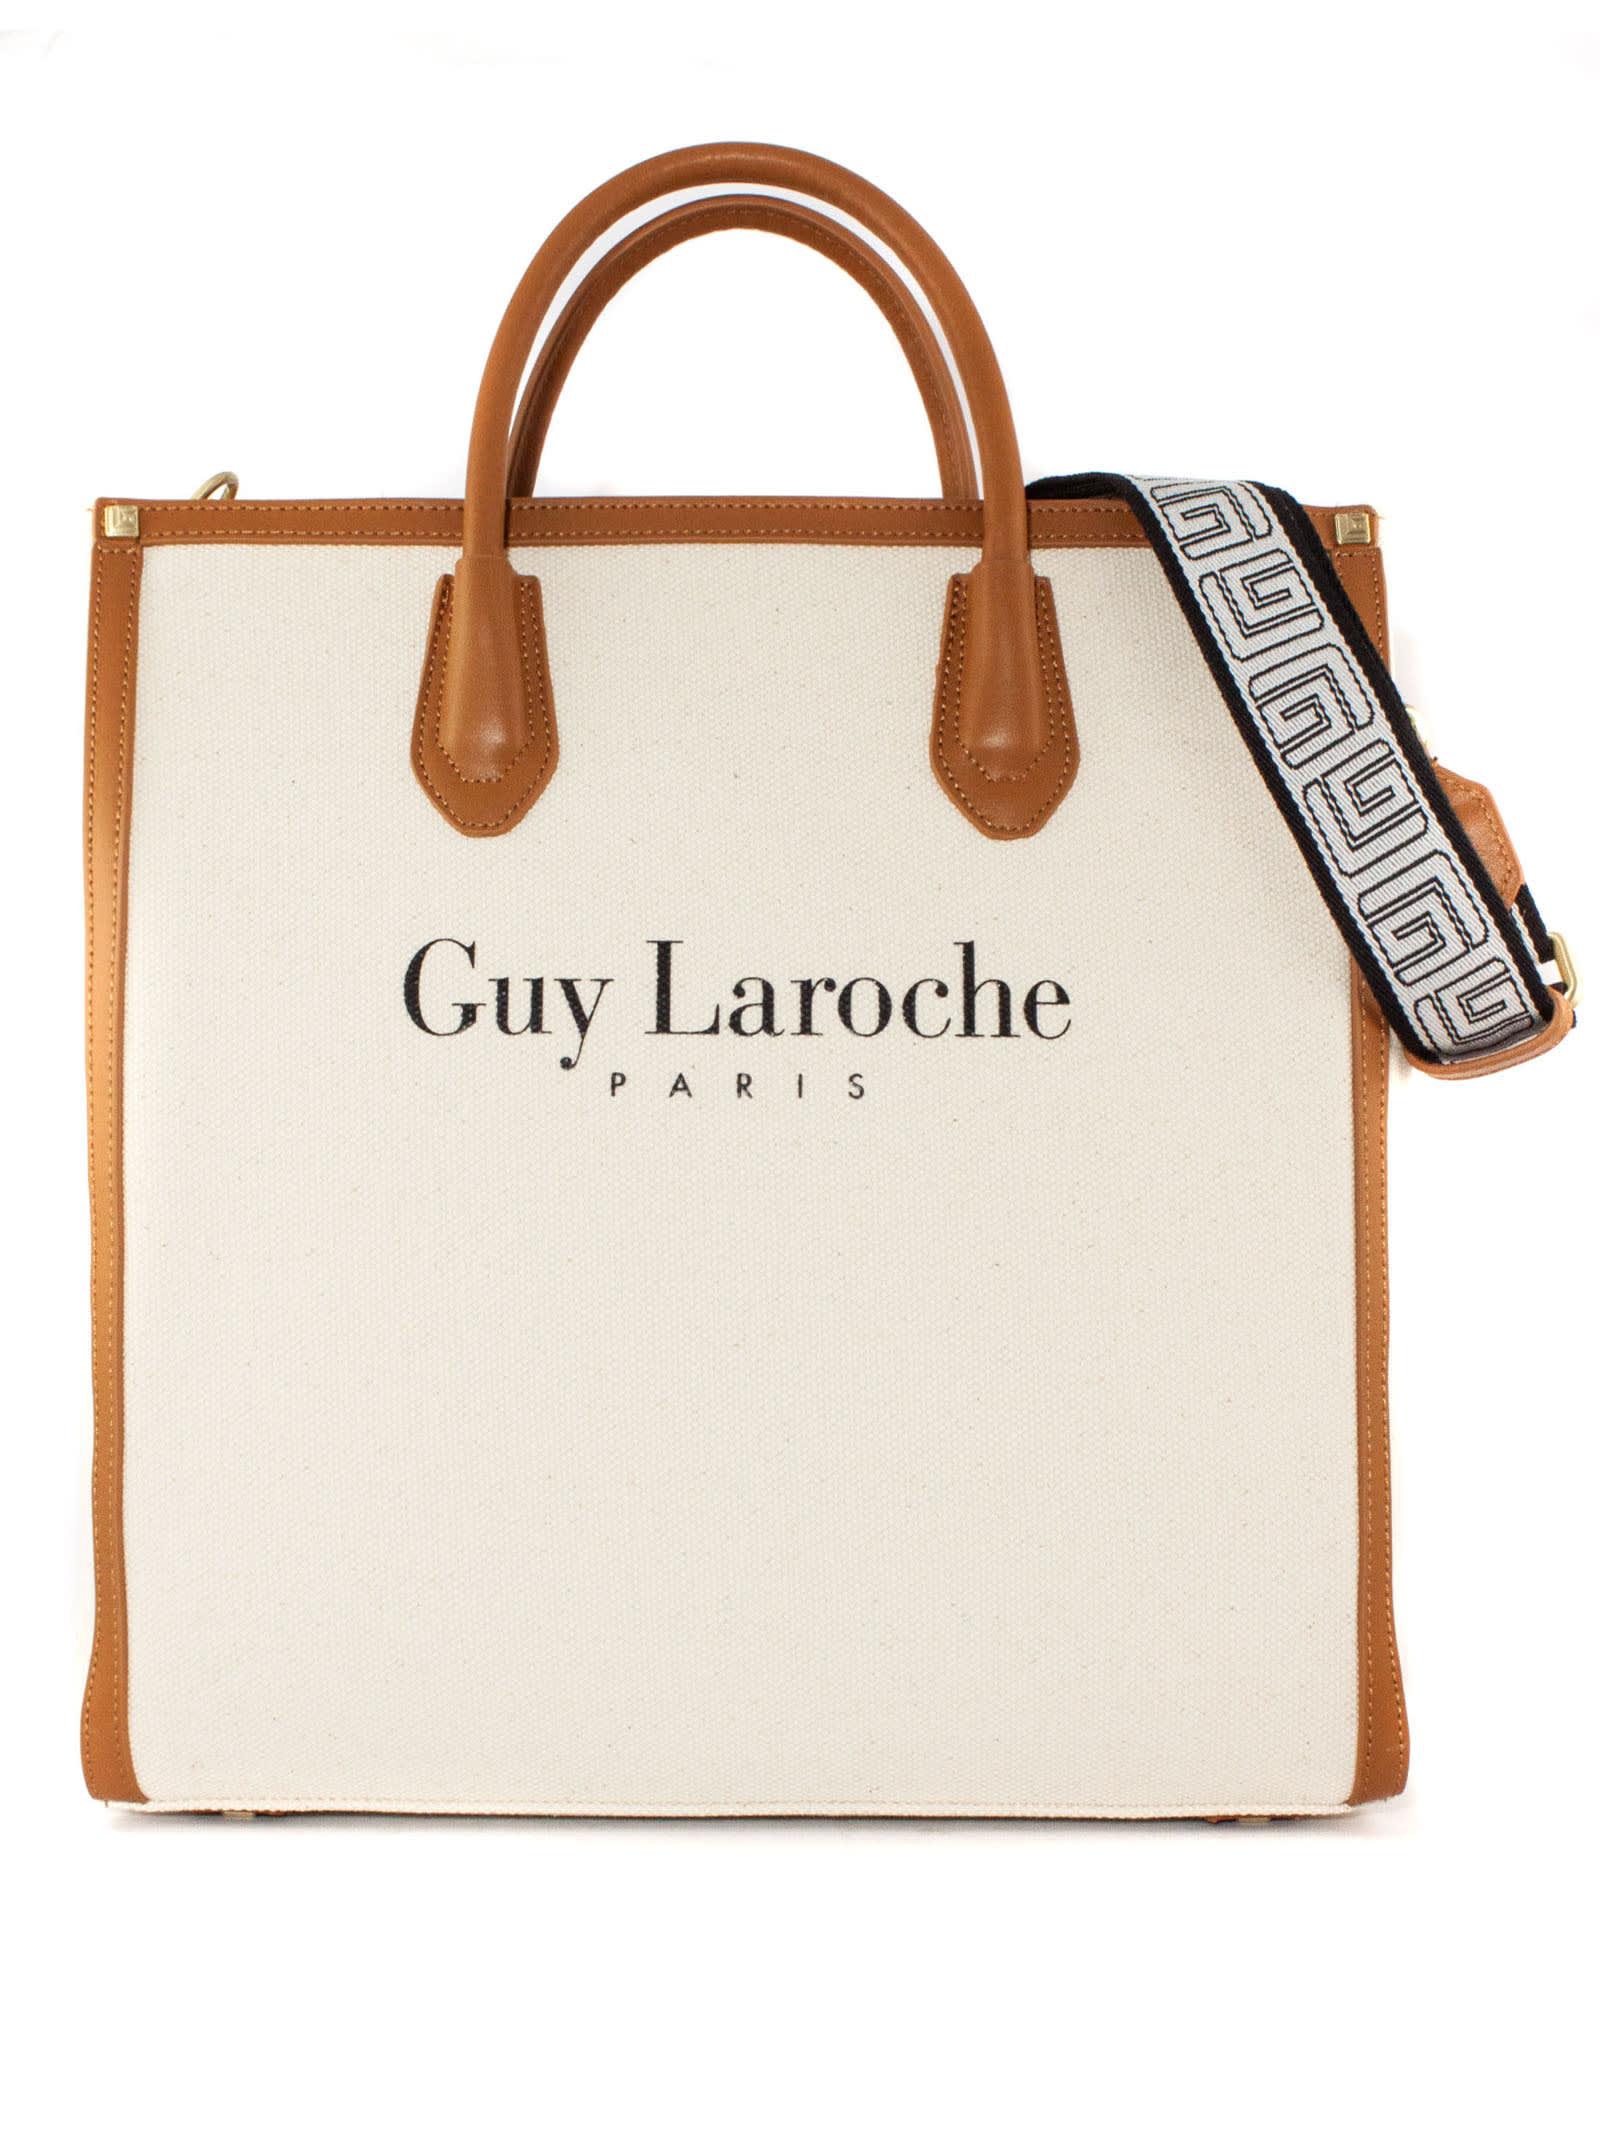 Guy Laroche Bags for women